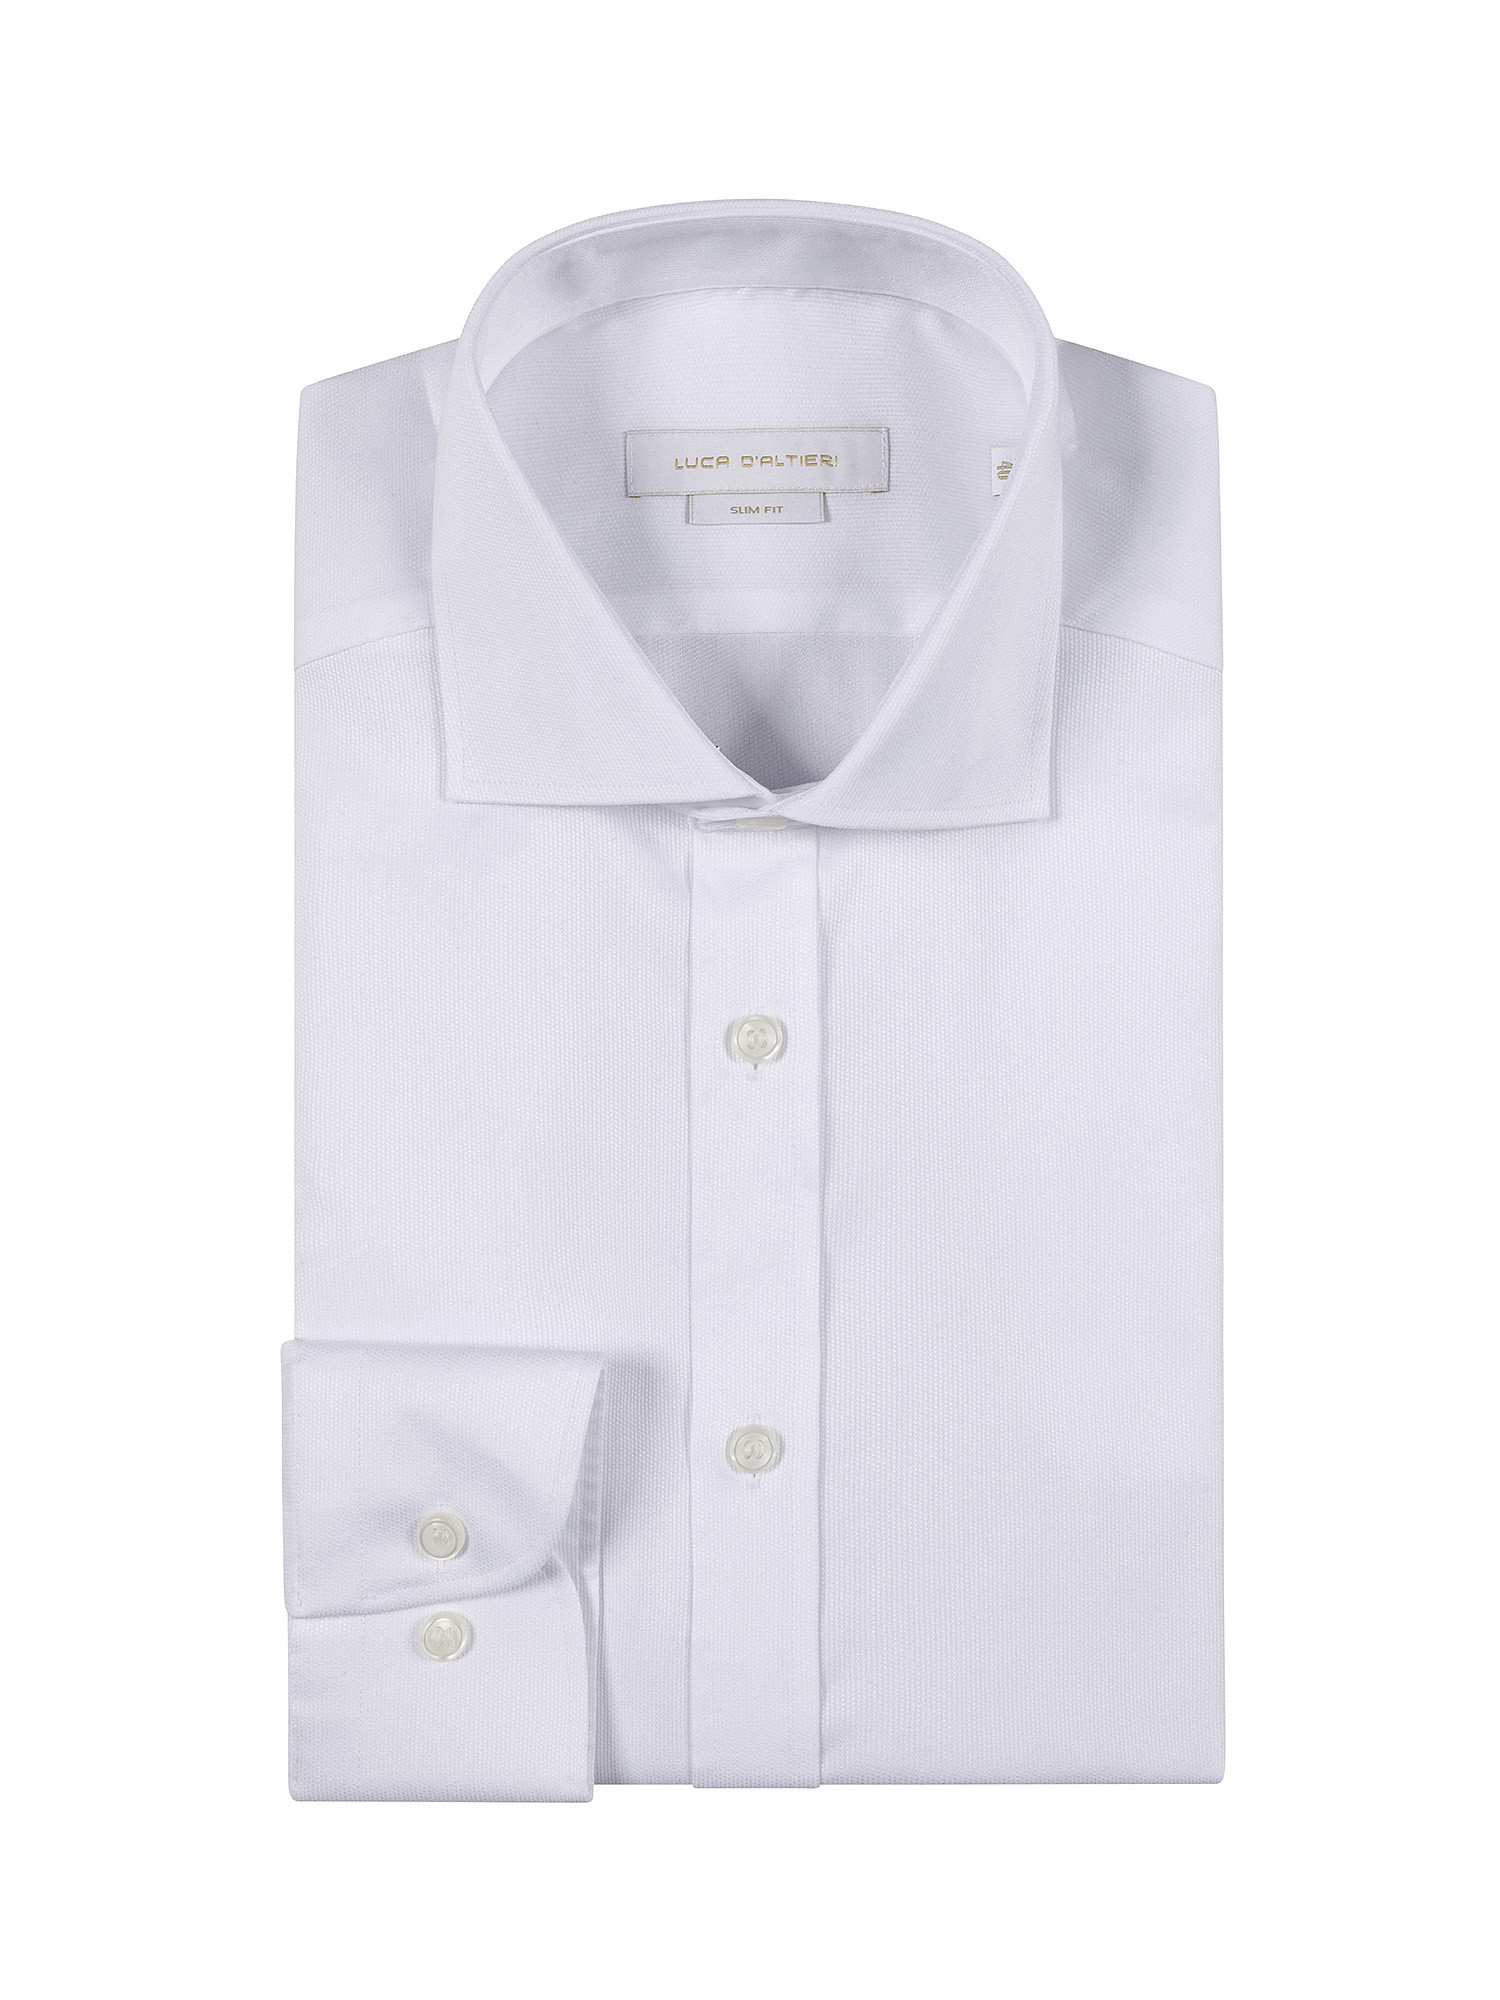 Camicia slim fit cotone armaturato, Bianco, large